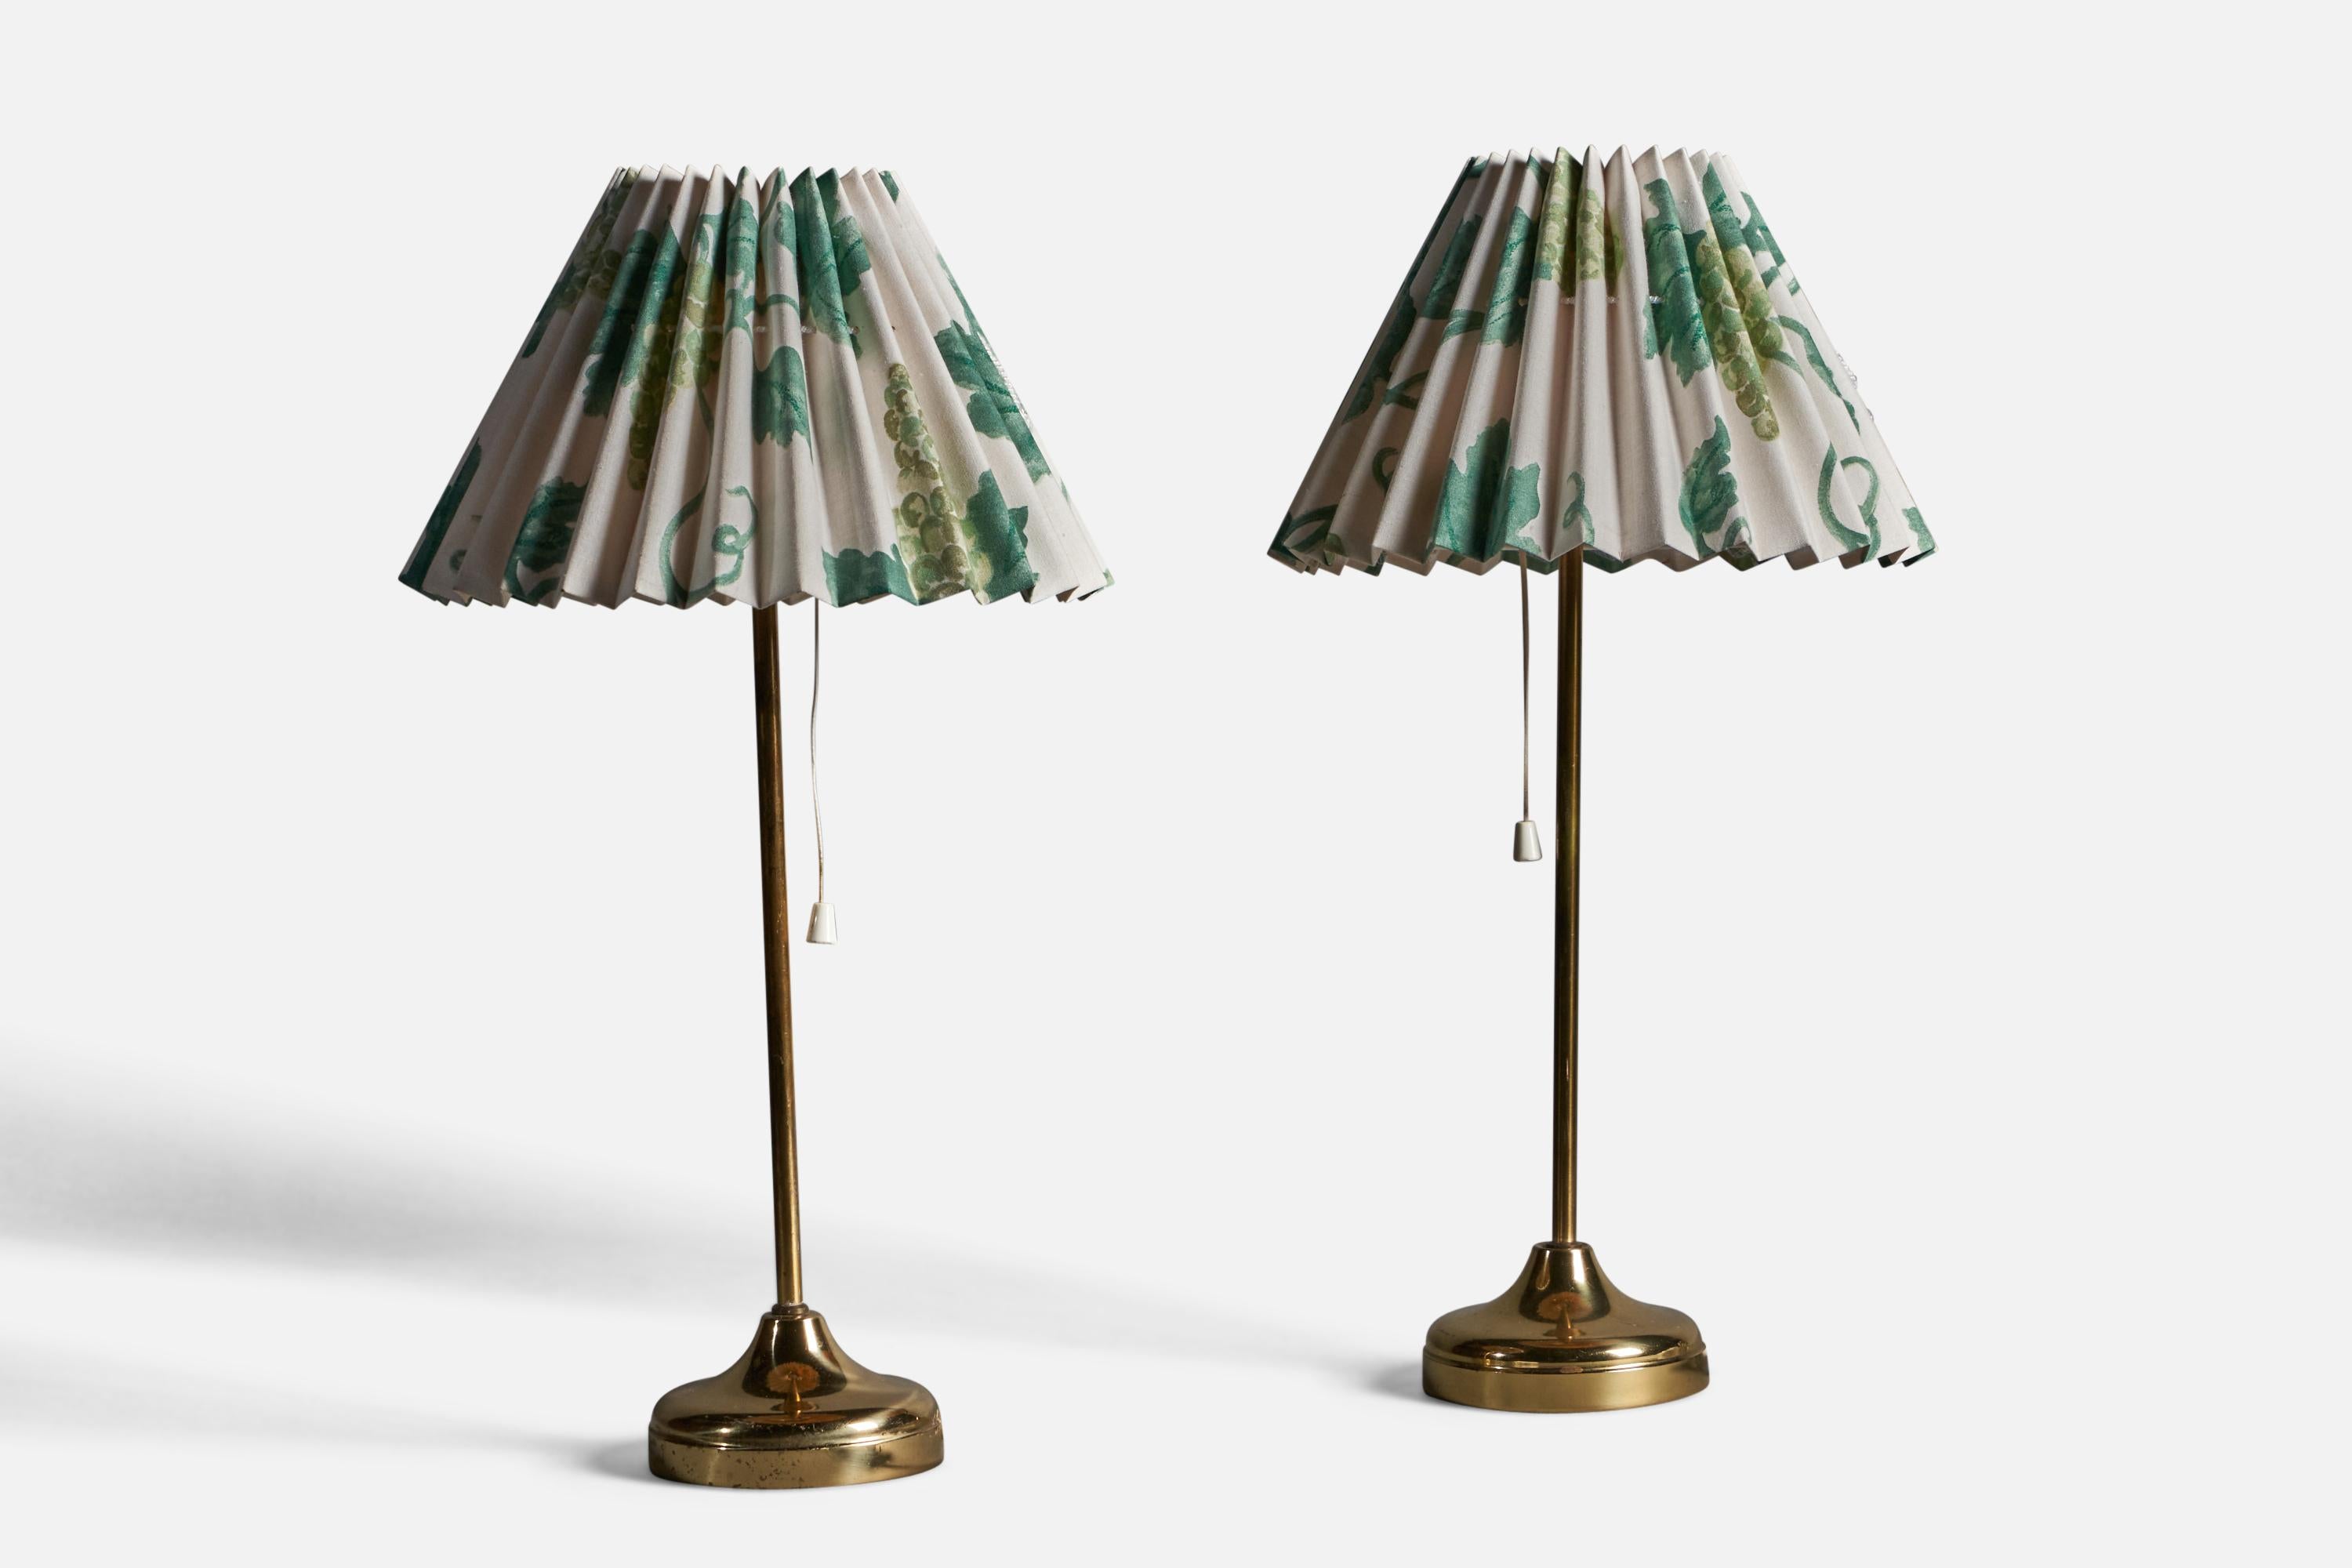 Ein Paar Tischlampen aus Messing und floral bedrucktem Stoff, entworfen und hergestellt von NAFA, Schweden, 1960er Jahre.

Gesamtabmessungen (Zoll): 18,75